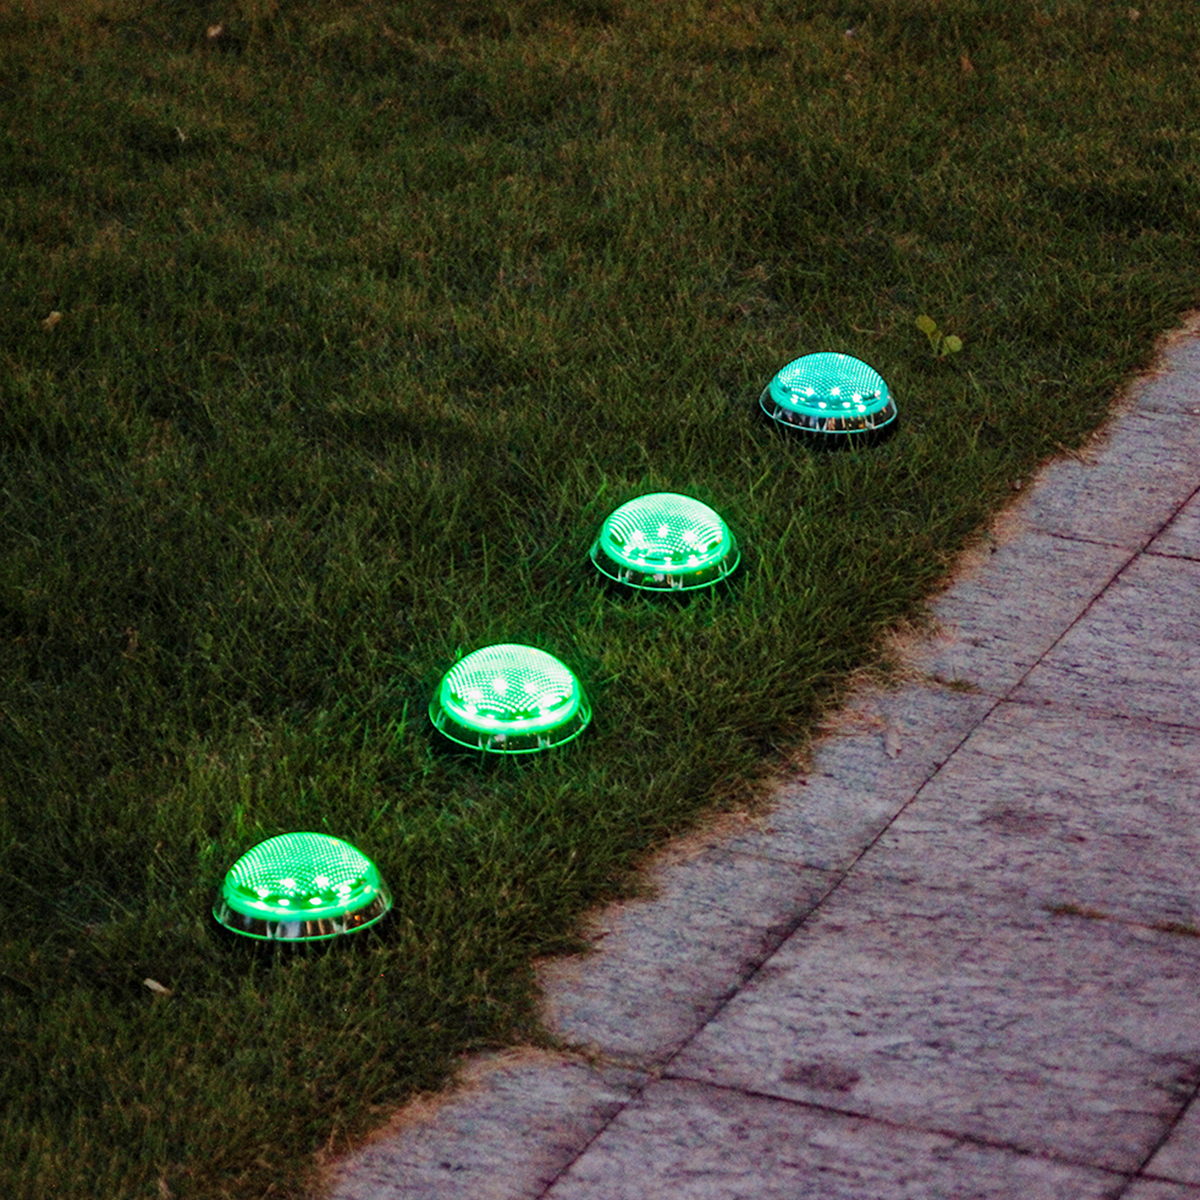 2PCS-Auto-Sensing-LED-Solar-Ball-Light-Garden-Outdoor-Patio-Lawn-Path-Lamp-For-Home-Decor-1770112-10